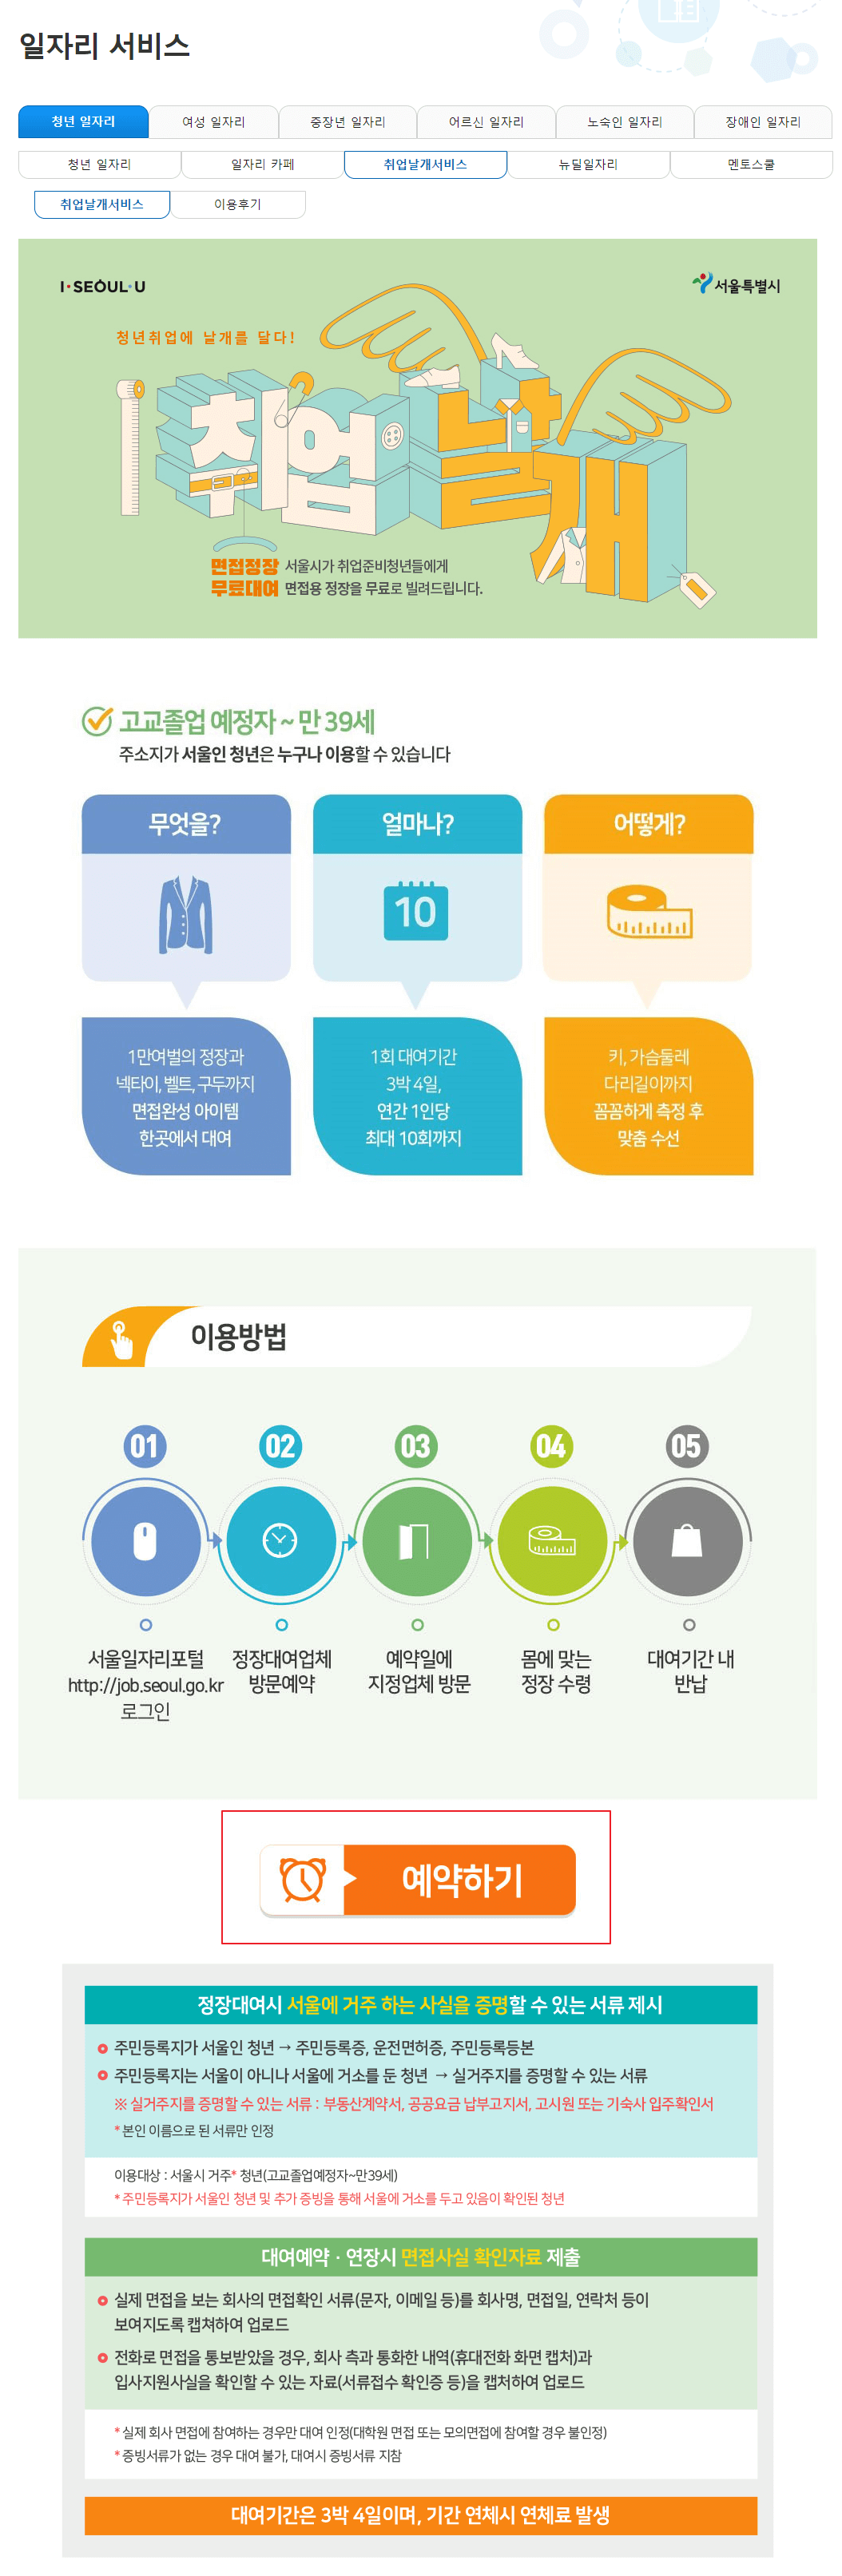 서울시 취업 날개 서비스